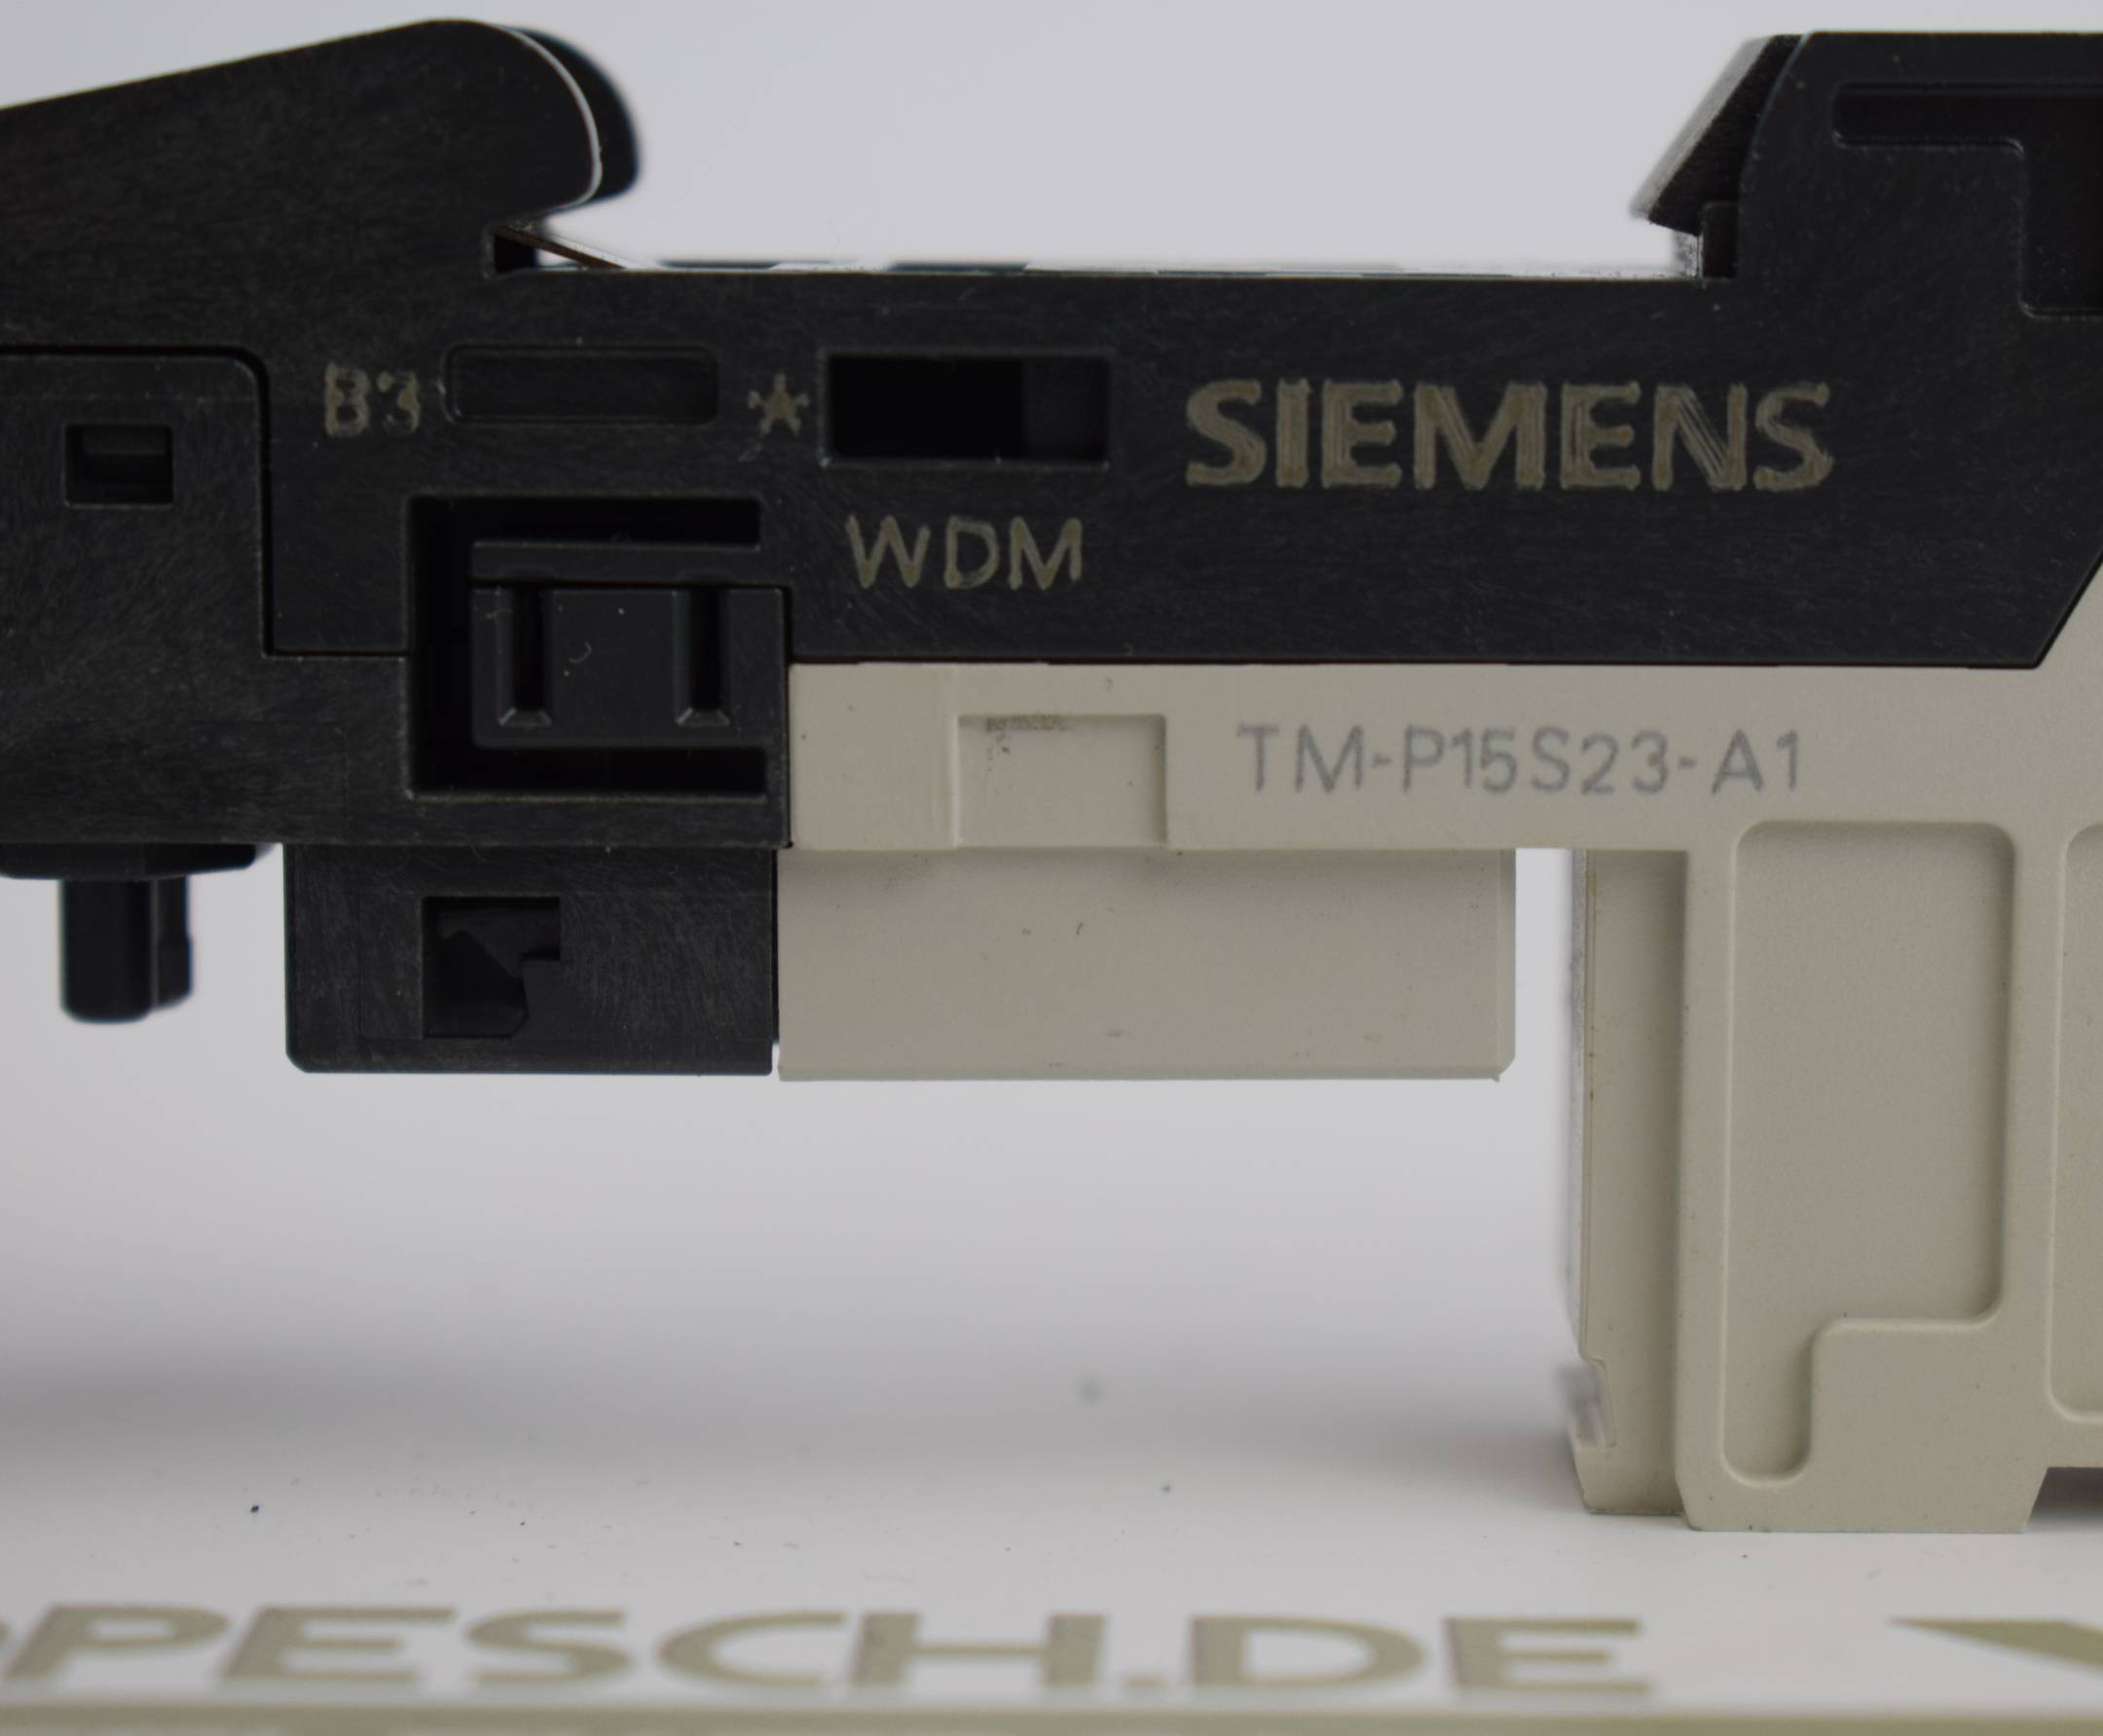 Siemens Simatic Terminalmodul 6ES7 193-4CC20-0AA0 ( TM-P15S23-A1 ) E2